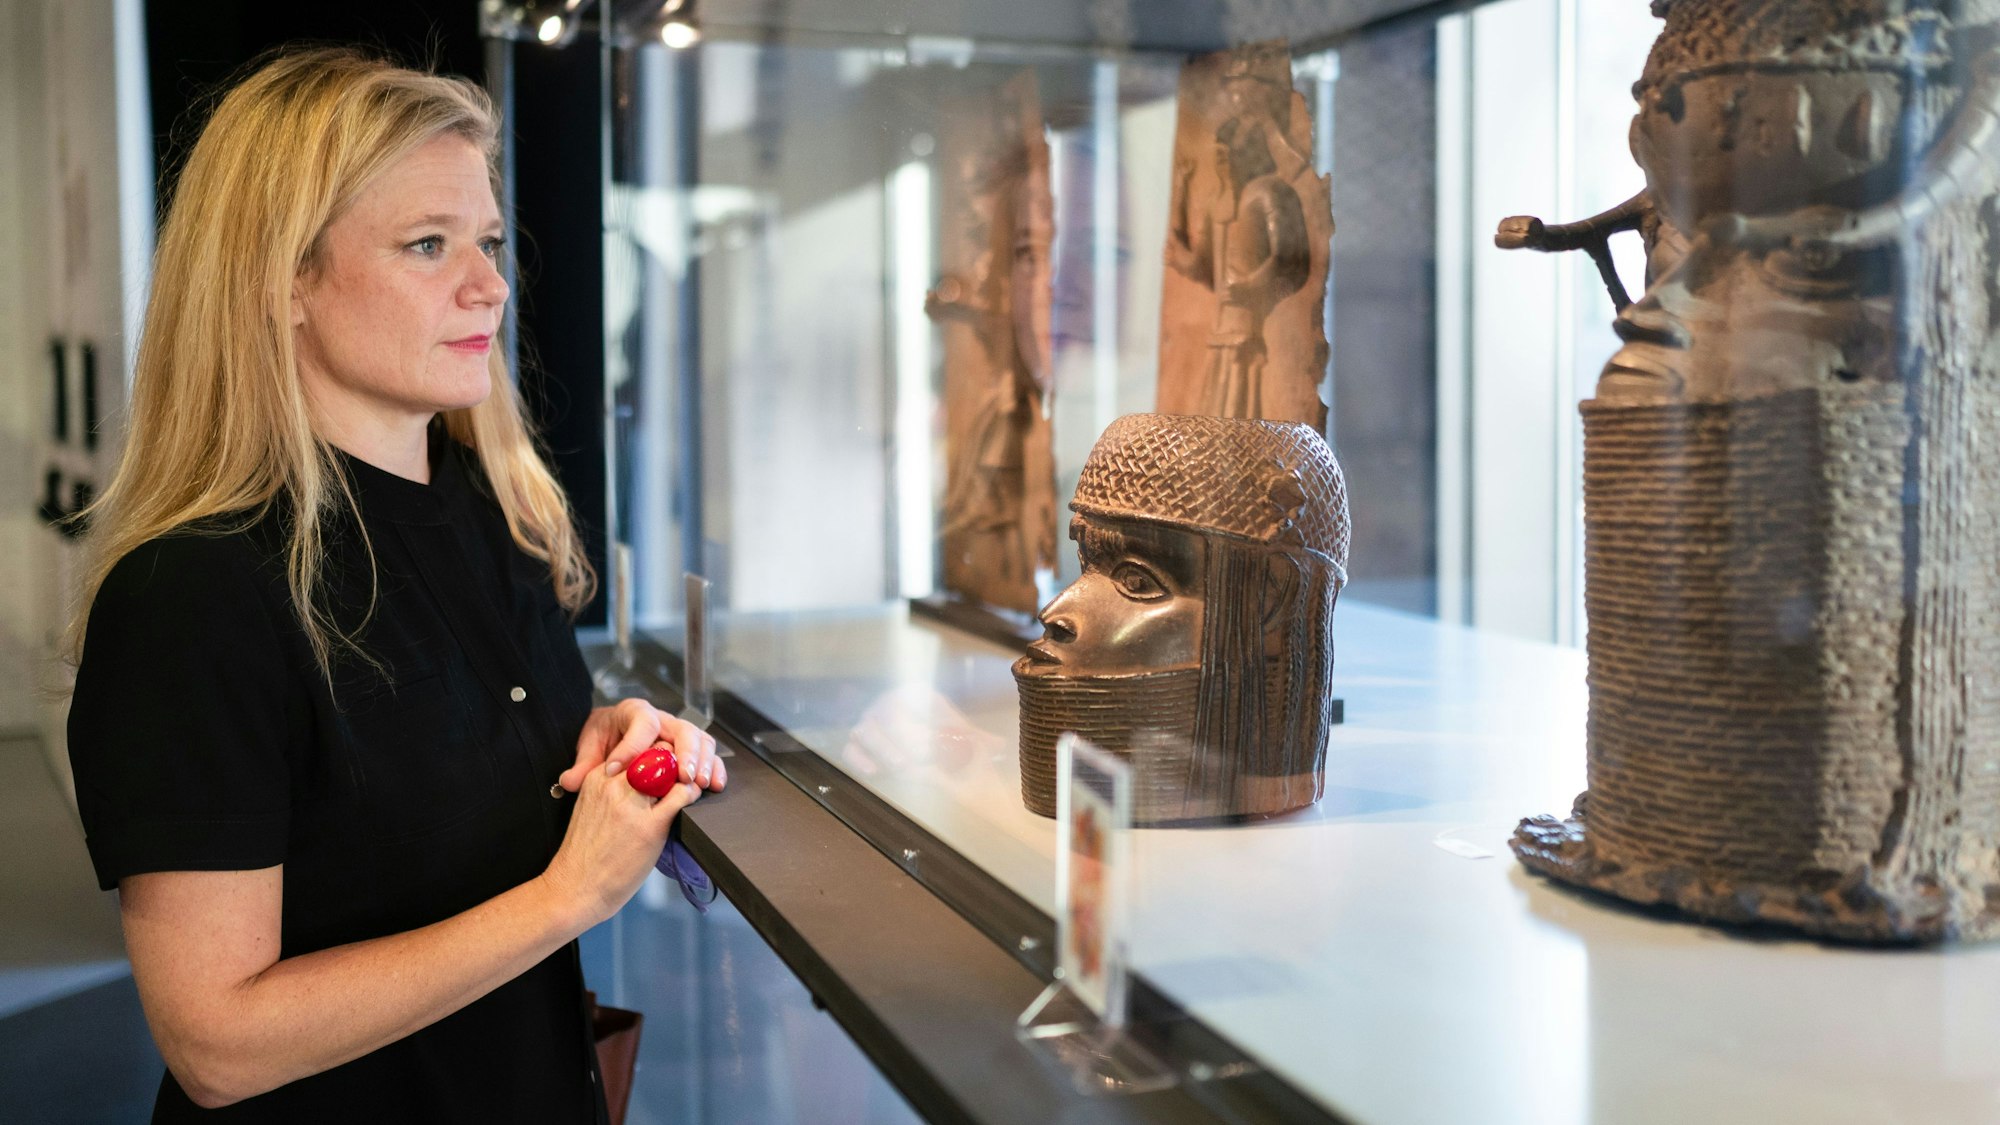 Nanette Snoep, Direktorin des Rautenstrauch-Joest-Museums, steht vor einer Vitrine mit Benin-Bronzen im Kölner Museum.